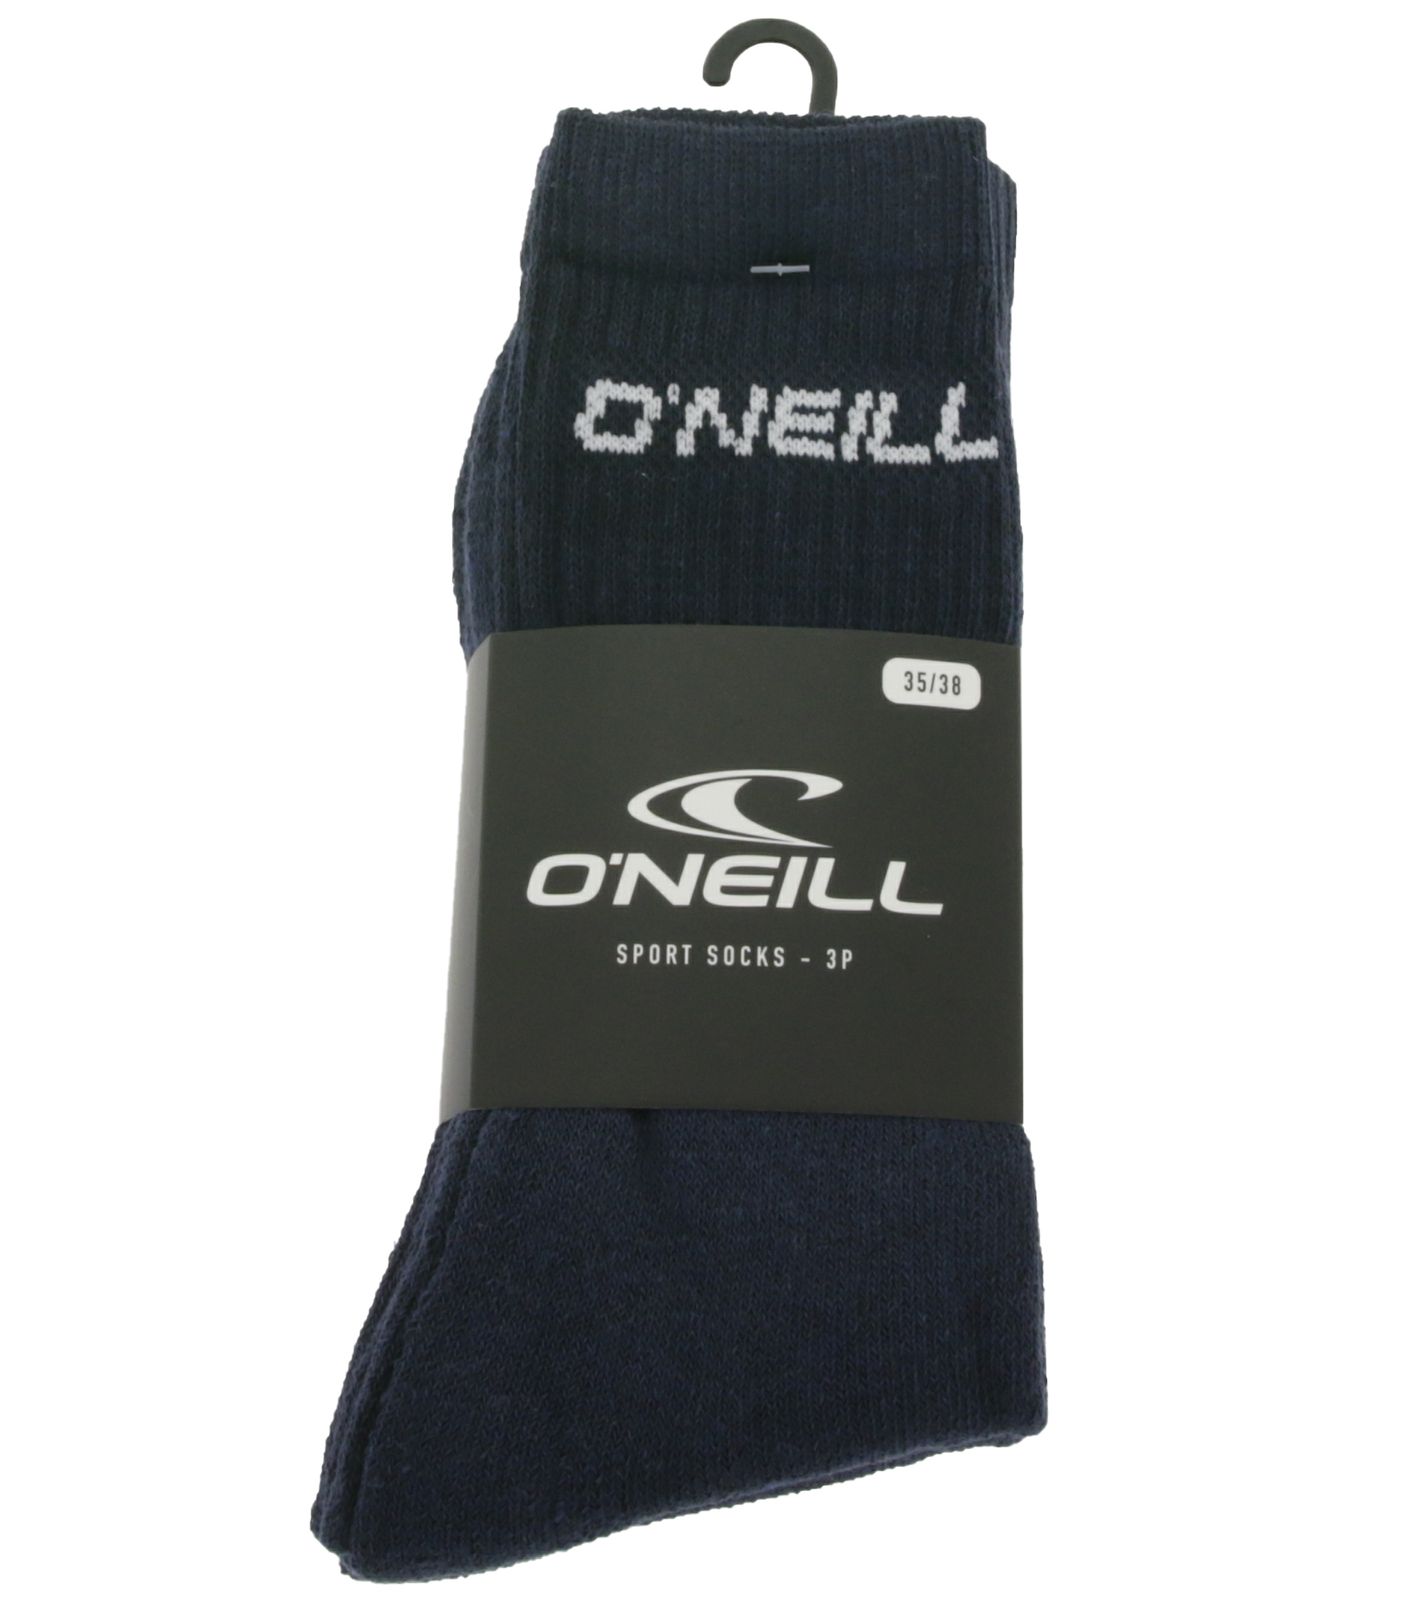 18 pares de calcetines de tenis O'Neill calcetines deportivos